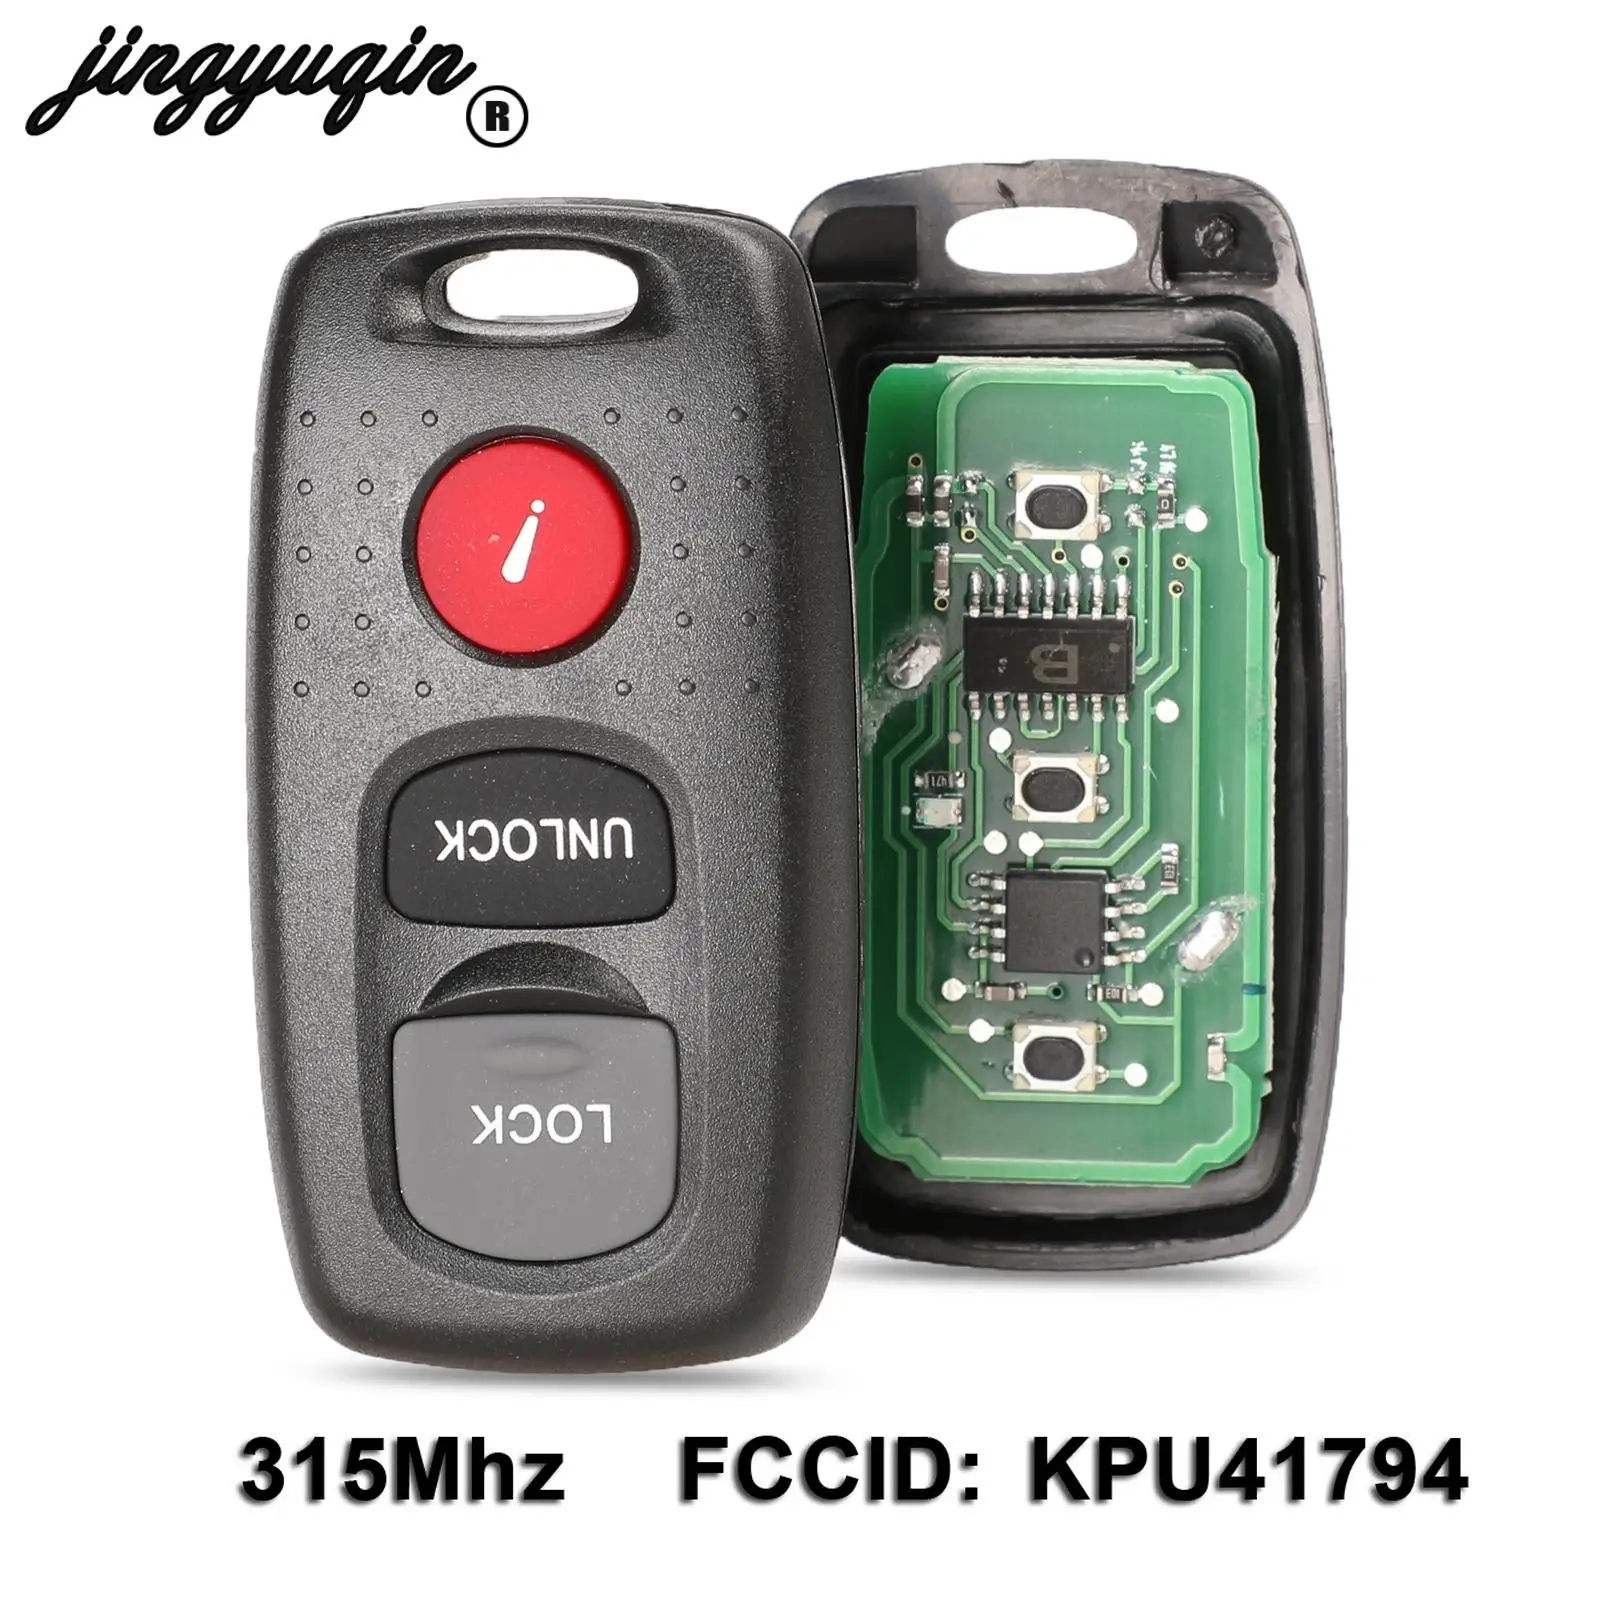 Jingyuqin 3 pulsanti per Mazda 3 6 MPV Protege 5 chiave remota Keyless Entry Fob trasmettitore allarme buzzper Clicker KPU41794 315Mhz